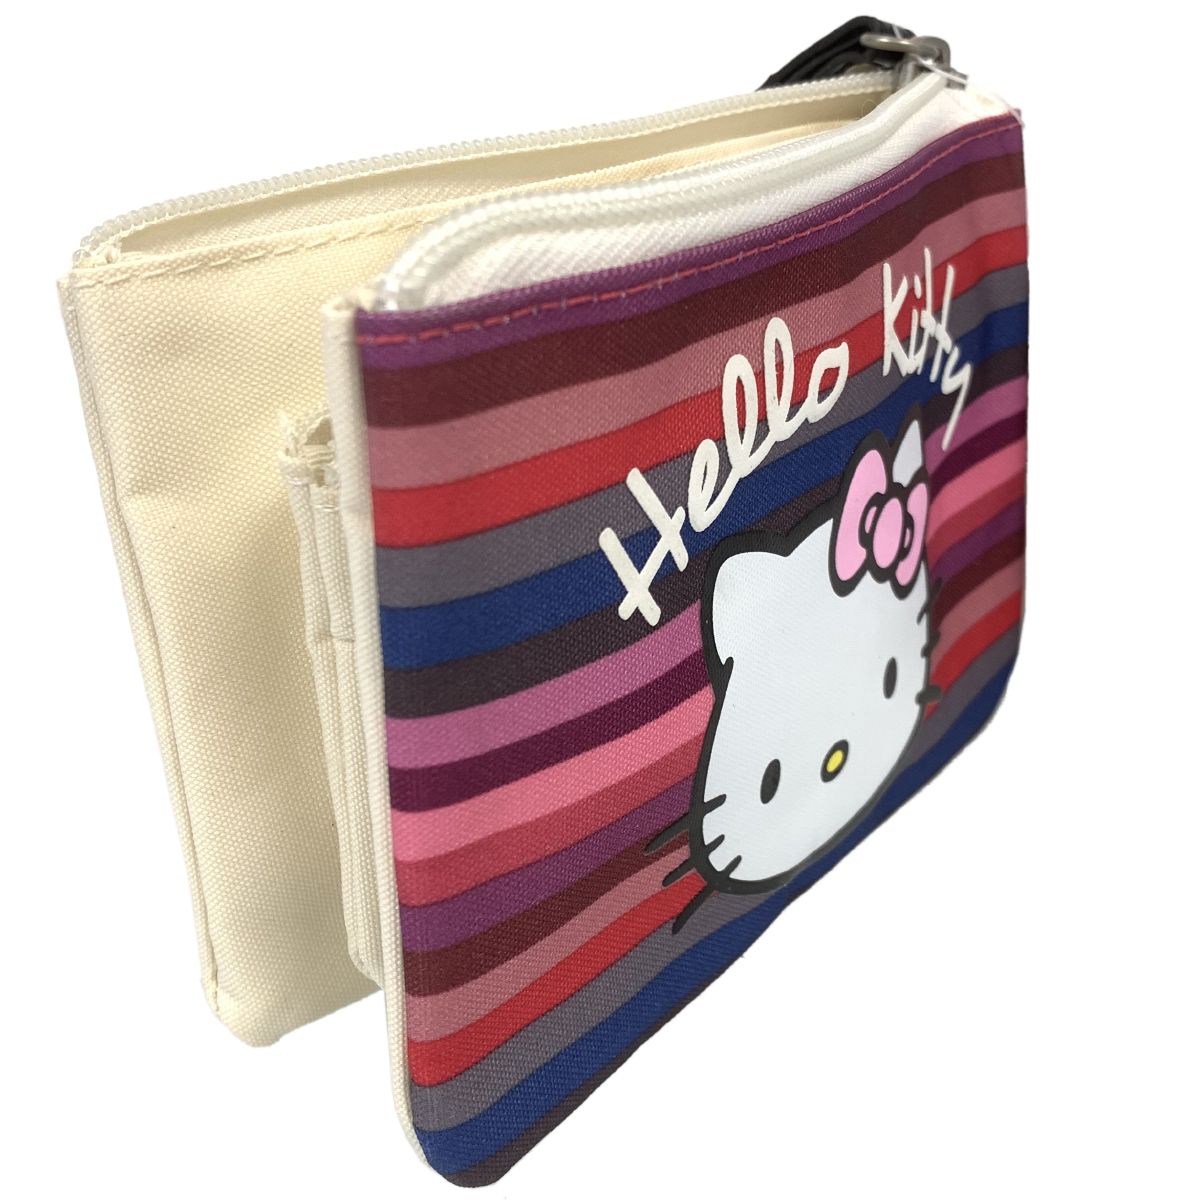 Hello Kitty stripes bellows purse